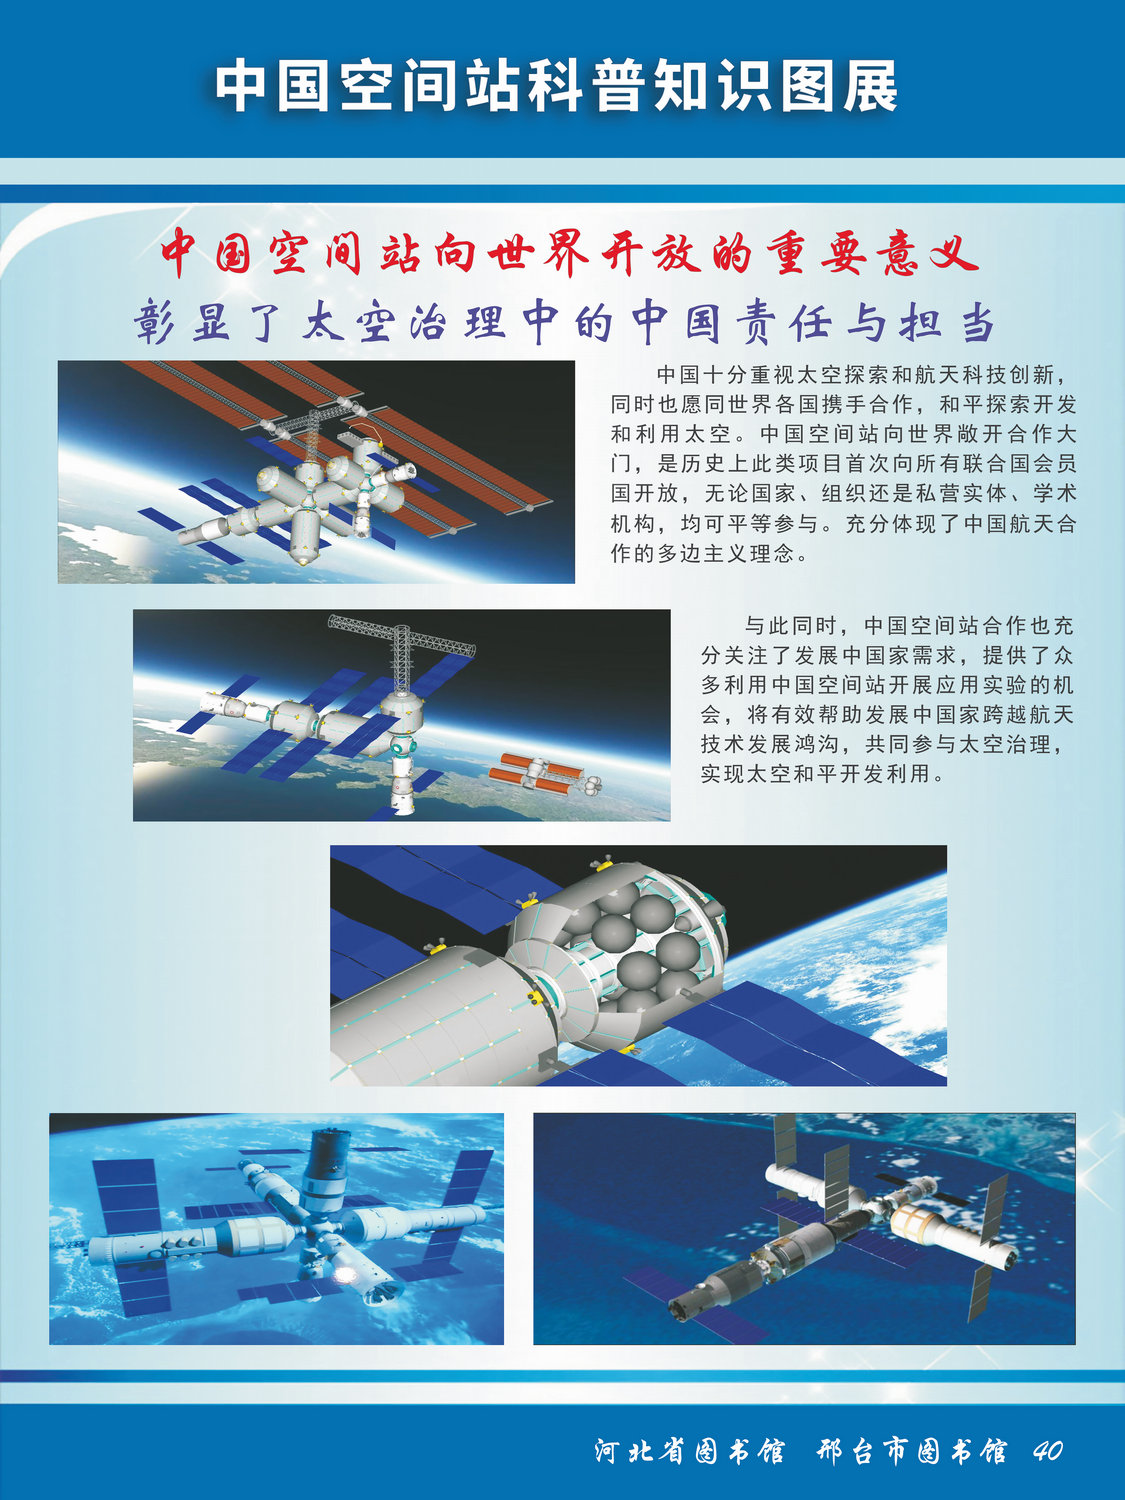 中国空间站科普知识图文展_图40